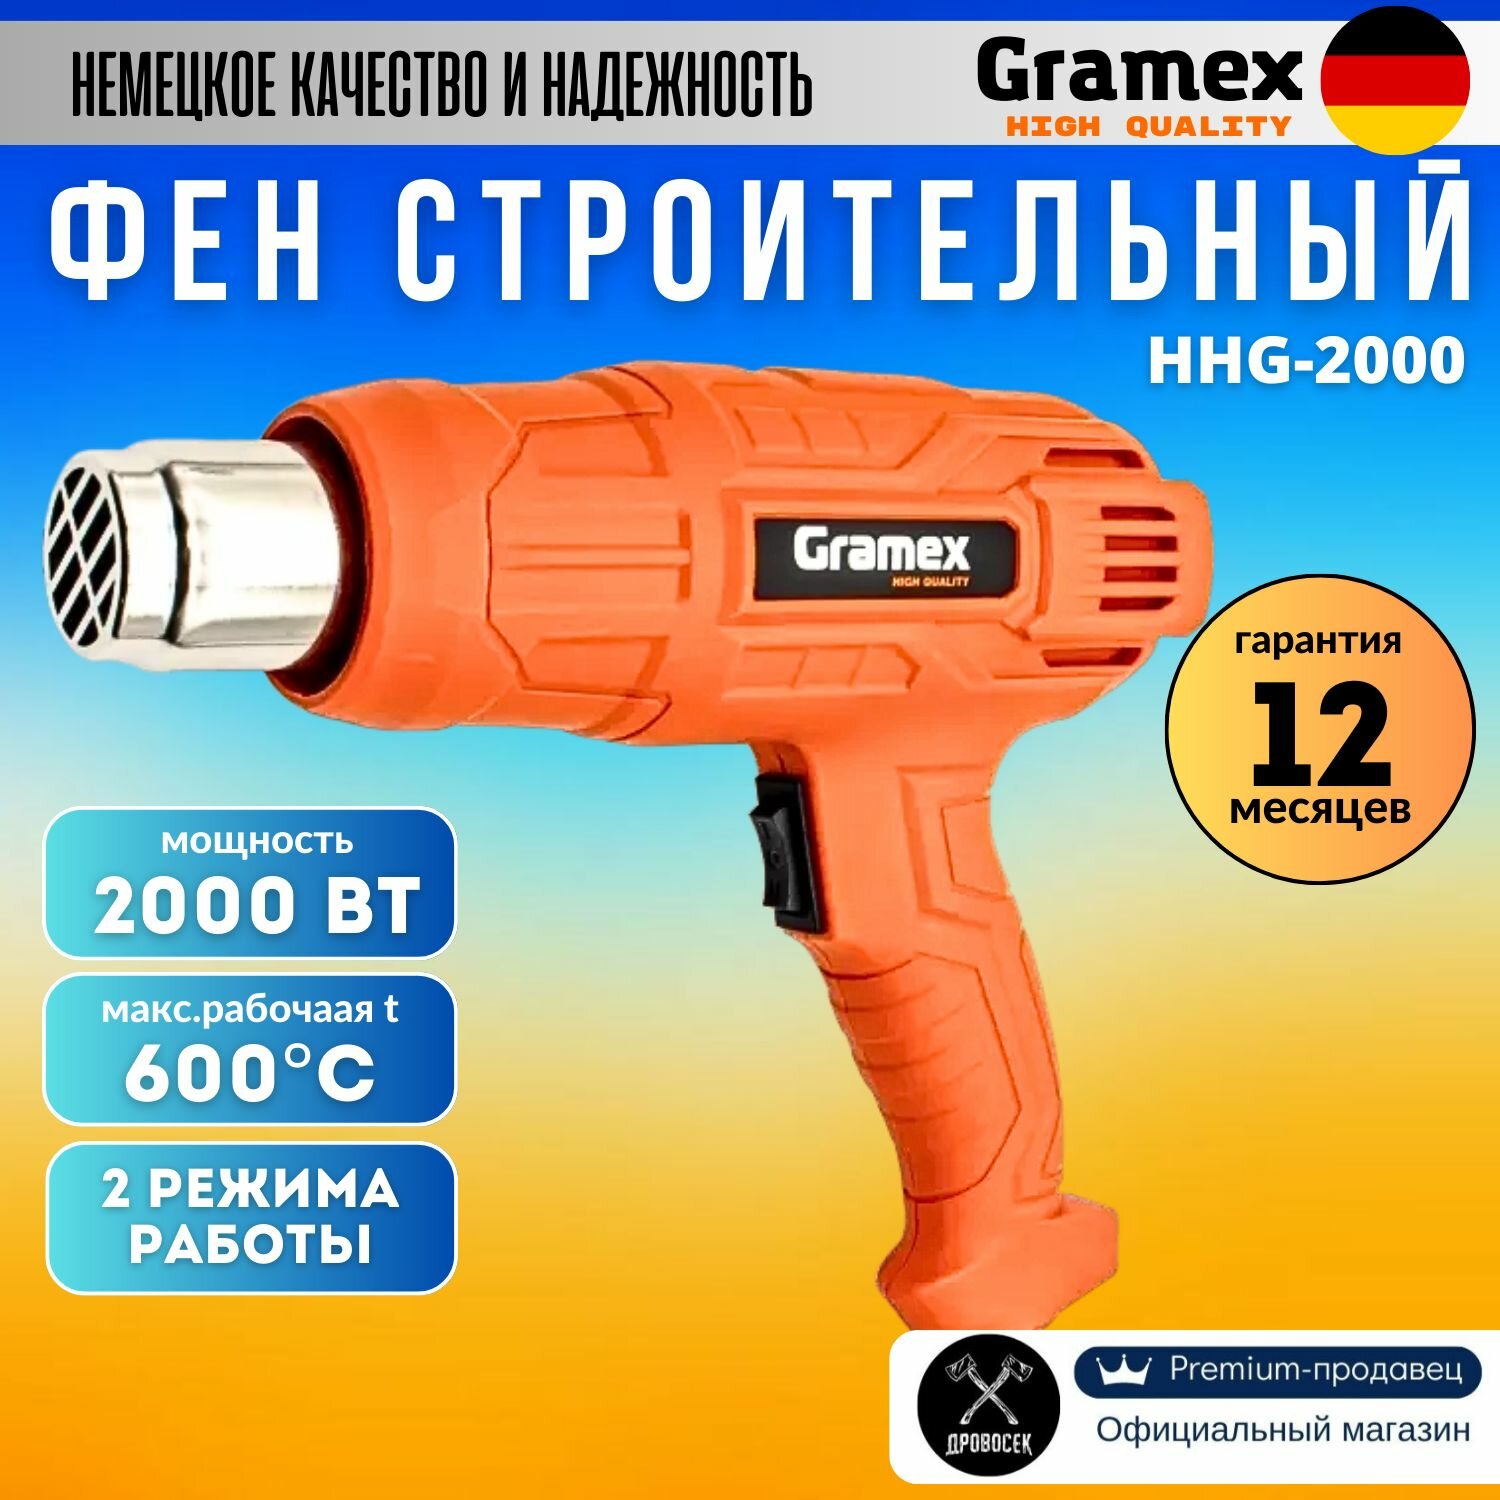 Фен строительный Gramex HHG-2000 с регулировкой температуры (2000Вт, 2 режима работы) / термофен технический